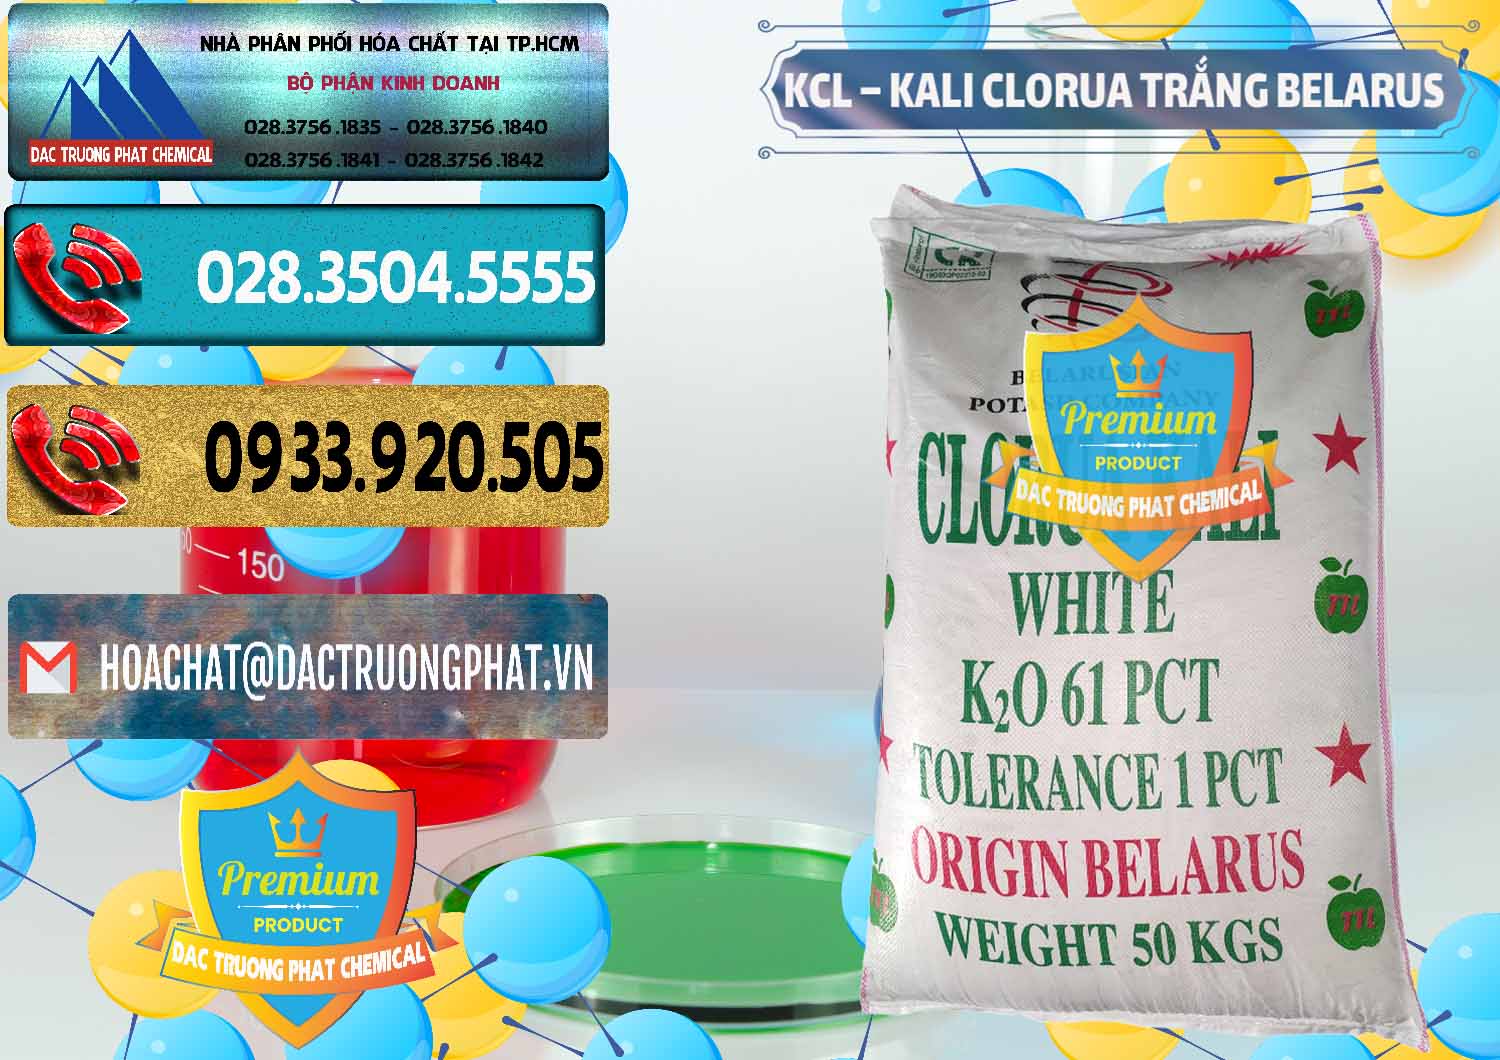 Công ty chuyên kinh doanh & bán KCL – Kali Clorua Trắng Belarus - 0085 - Đơn vị chuyên phân phối & cung ứng hóa chất tại TP.HCM - hoachatdetnhuom.com